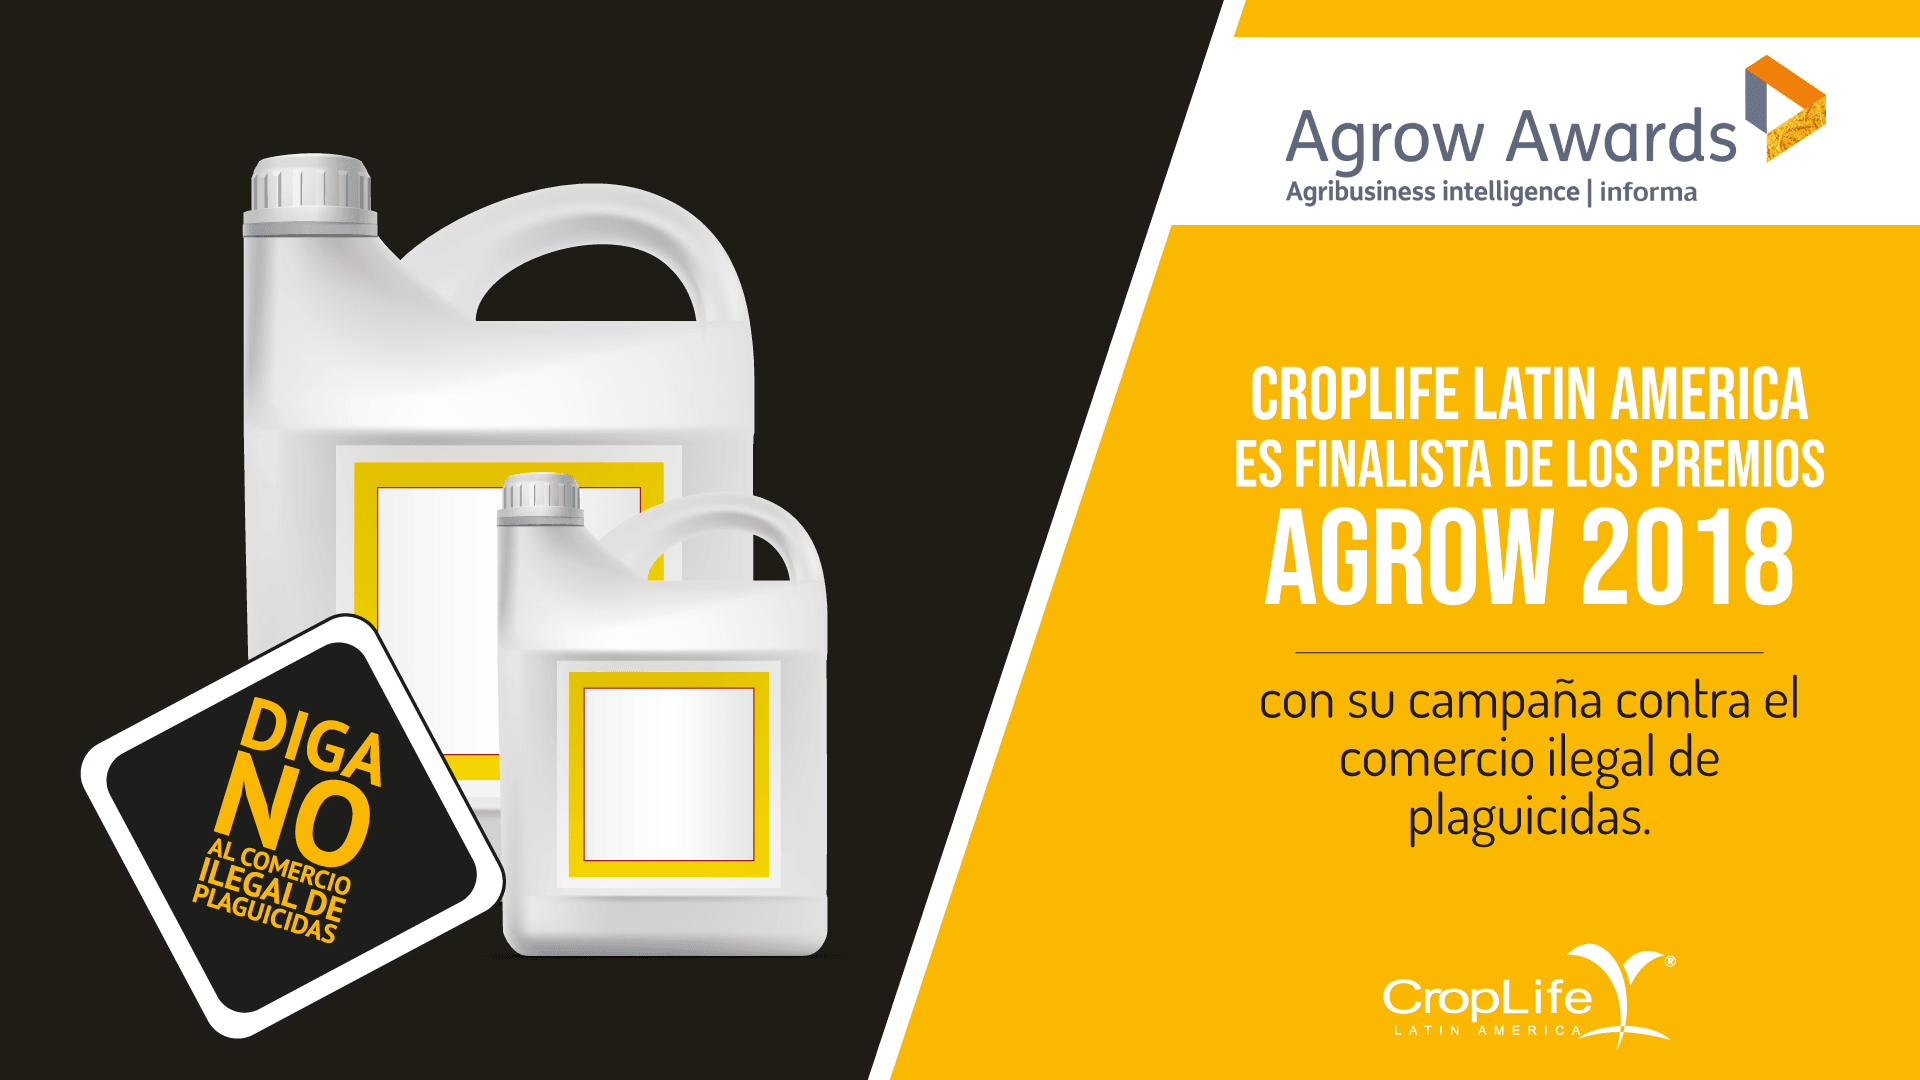 agrow-awards-croplife-latinamerica